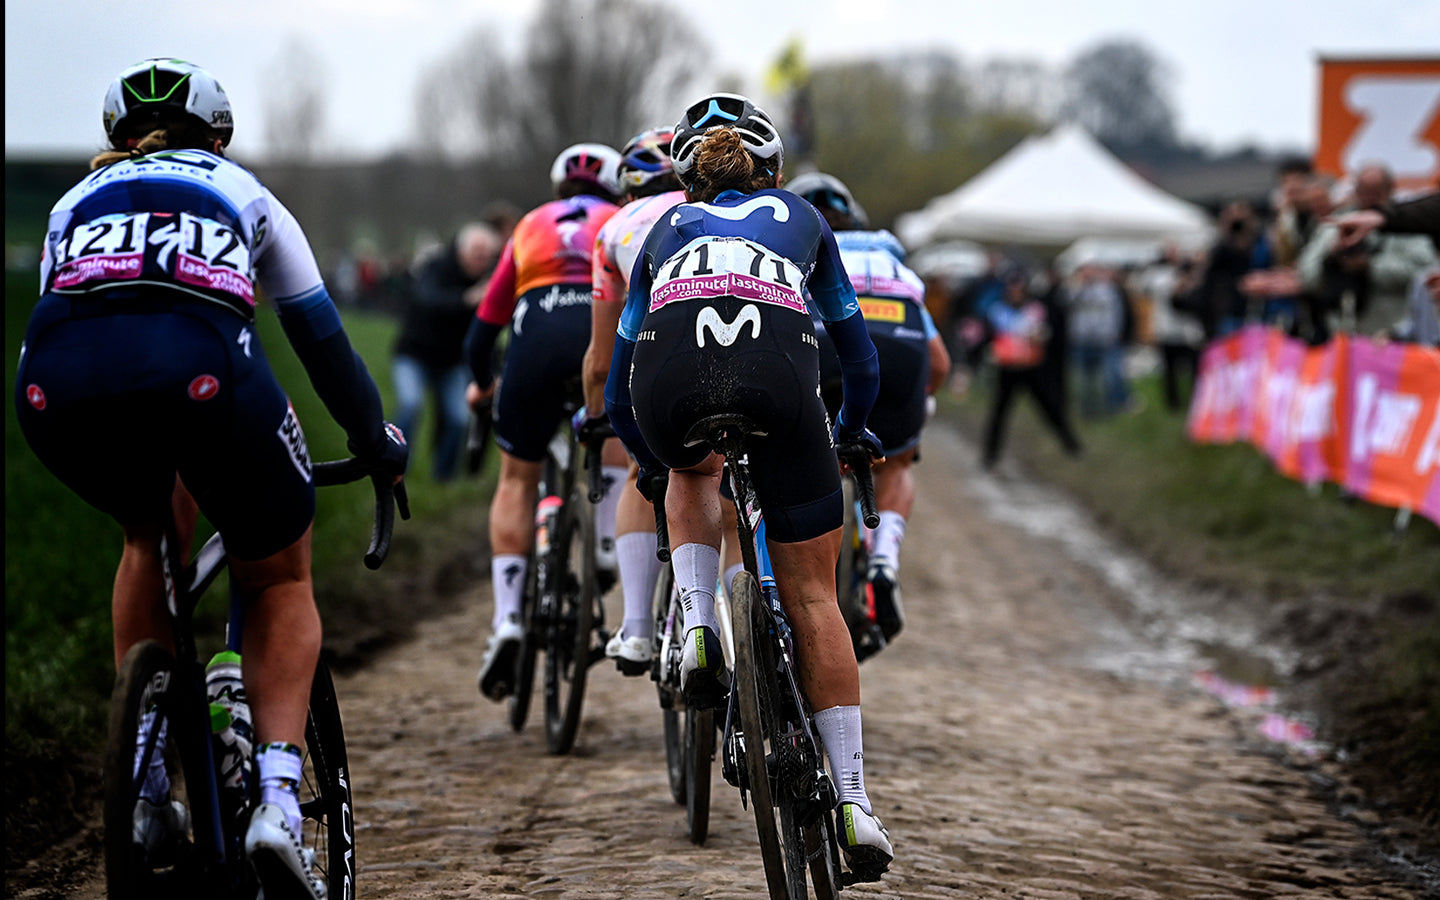 Sulla schiena, con il numero 71, il ciclista della Movistar Team squadra femminile, che percorre uno dei tratti di pavé caratteristici della Parigi-Roubaix.